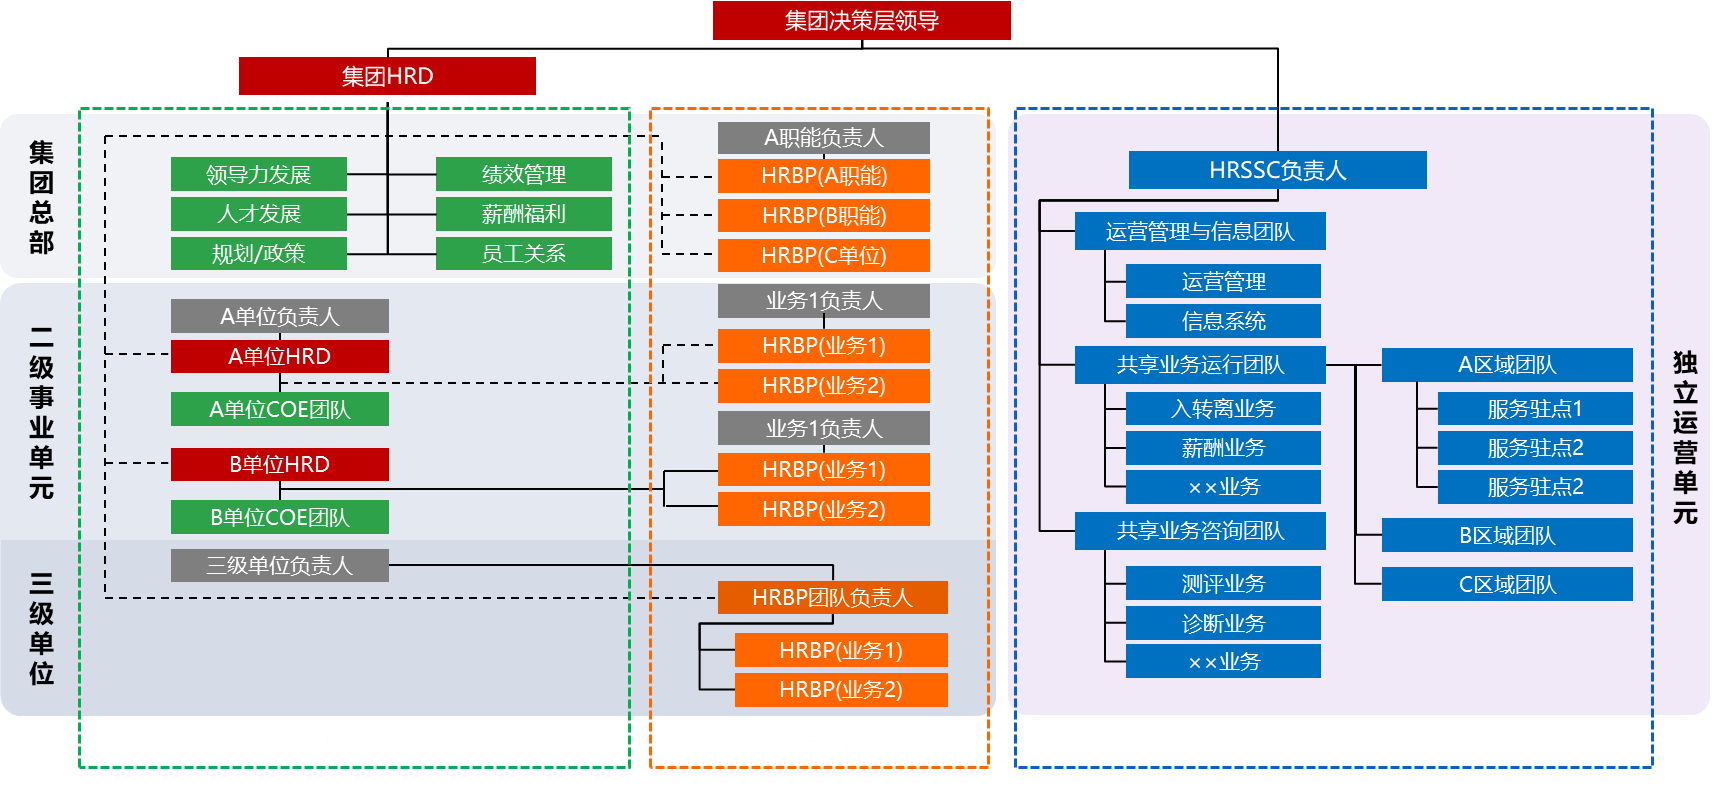 图1 东风HR三支柱体系规划